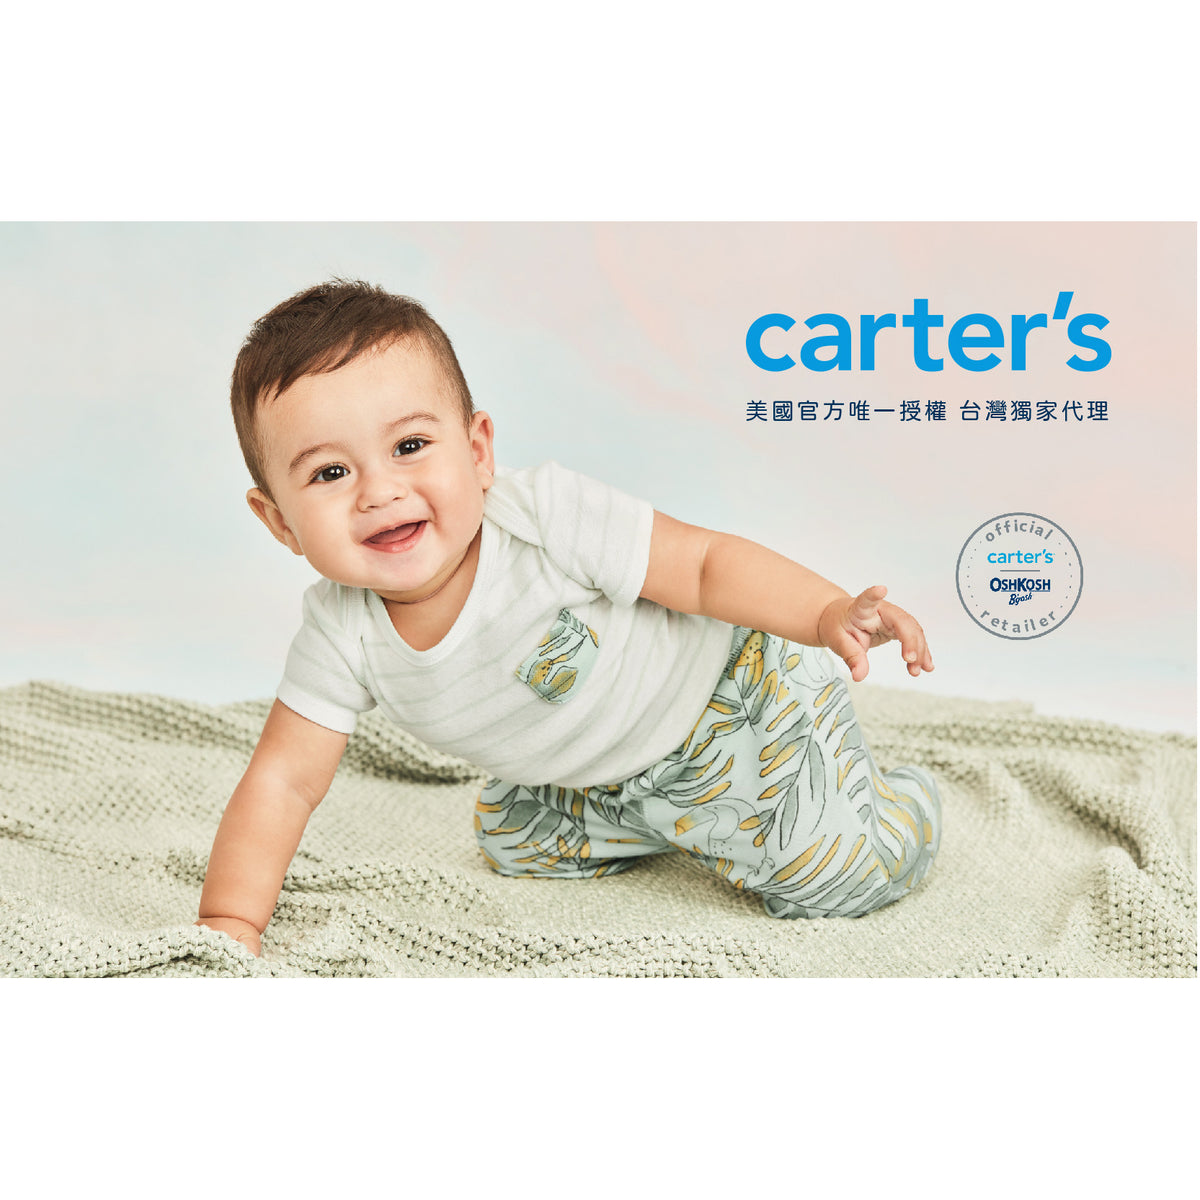 Carter's 時尚恐龍塗鴉3件組套裝(6M-9M)